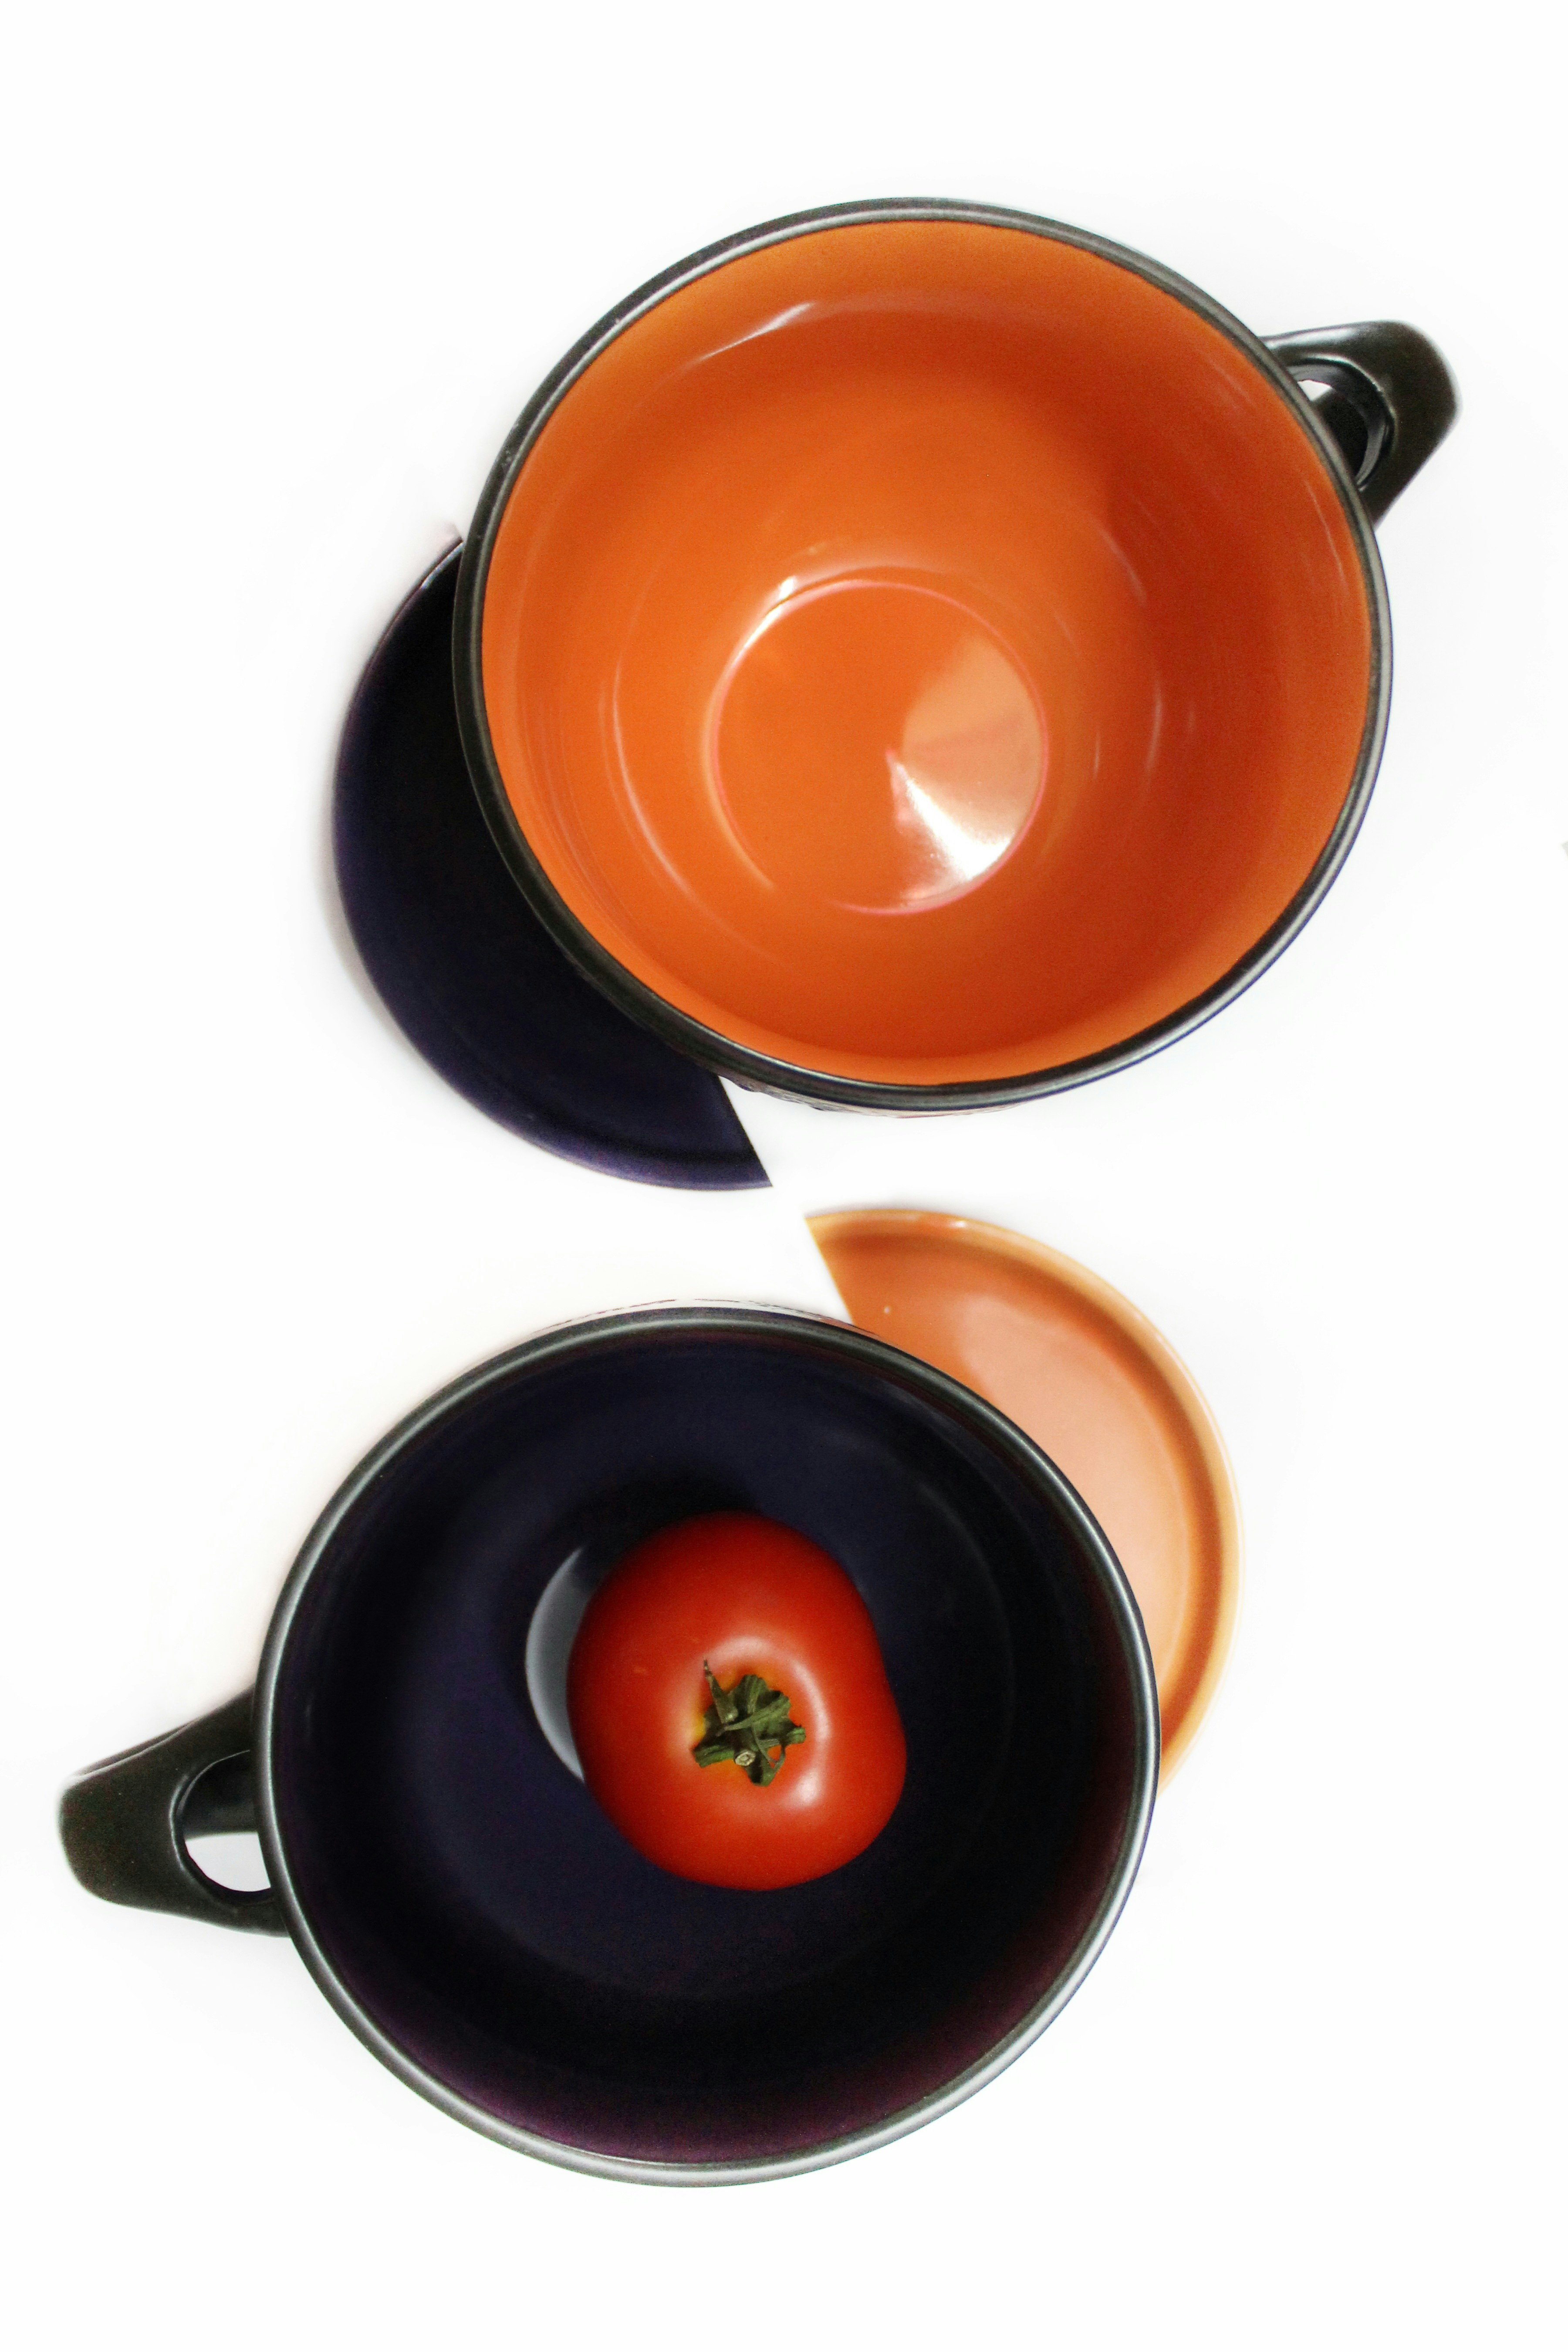 orange and black ceramic mug